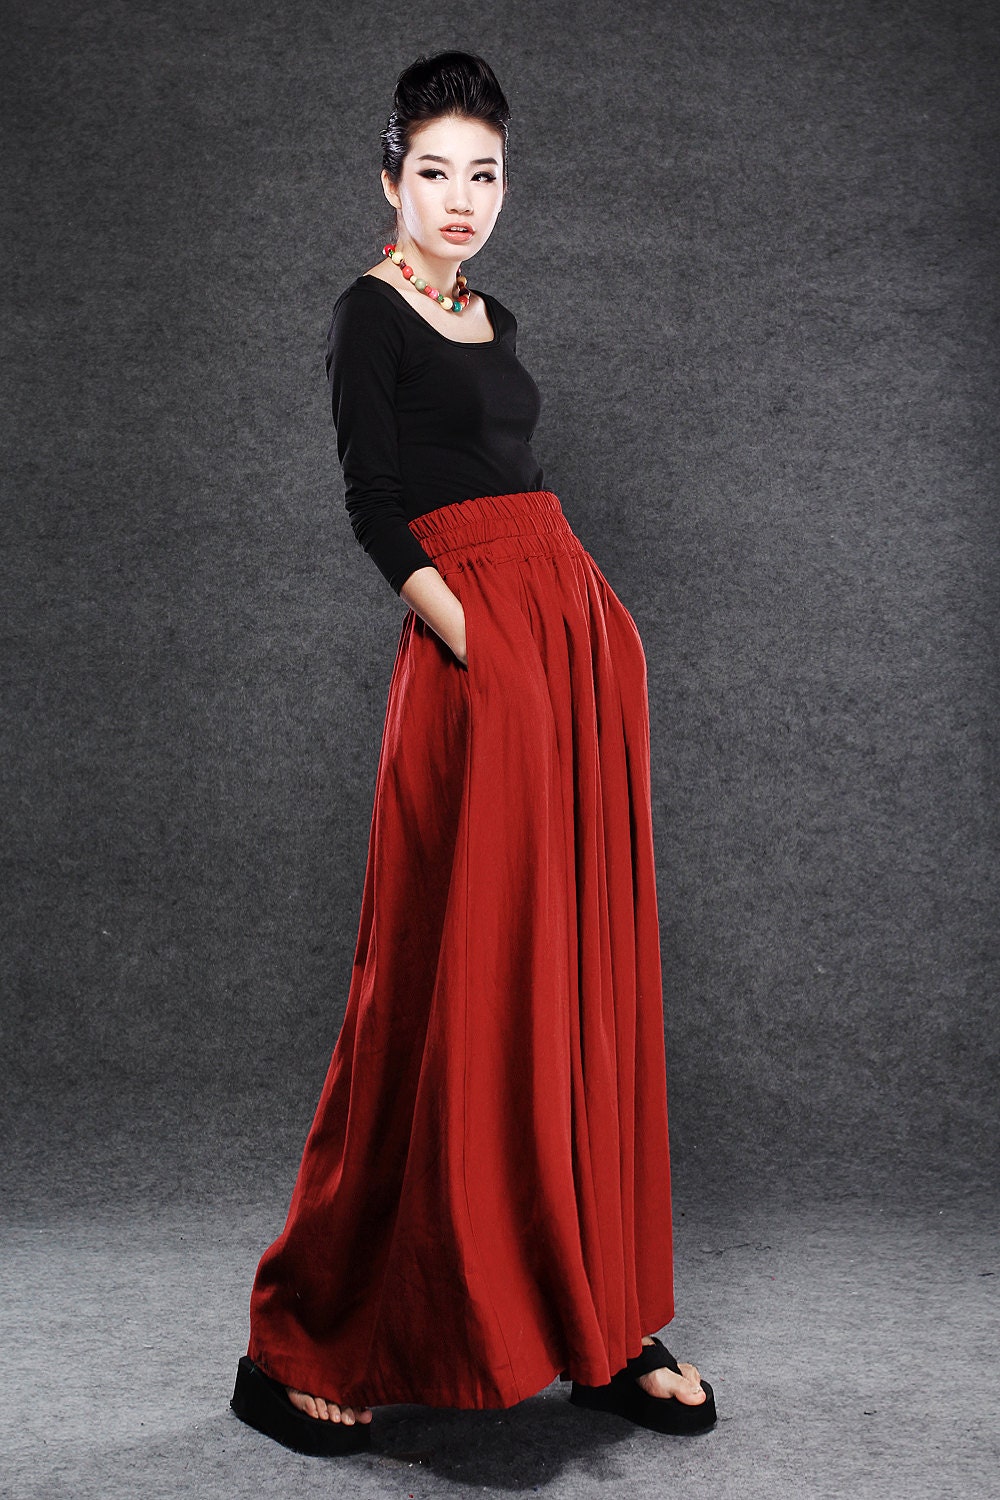 Red Linen Maxi Skirt Dark Red Full Long Skirt with